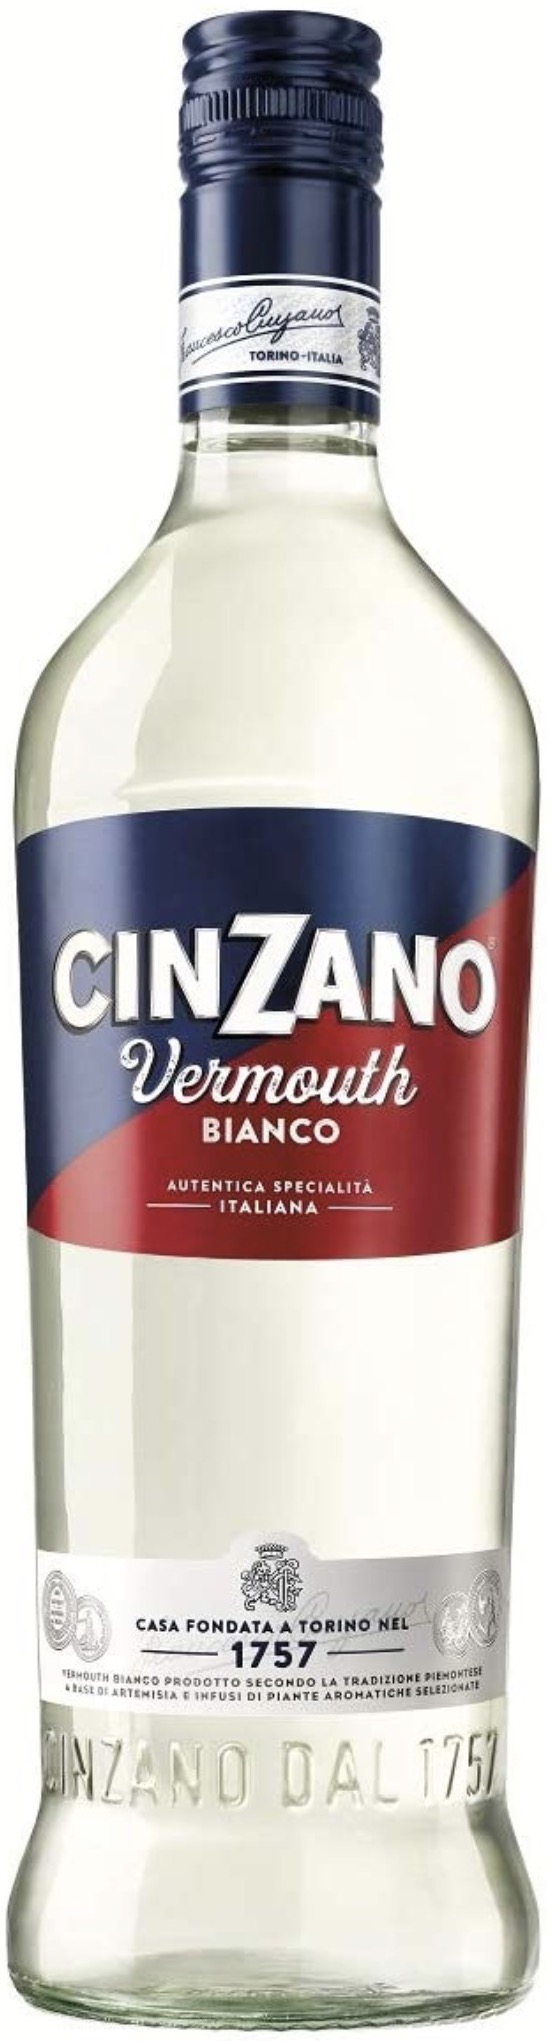 Cinziano Vermouth Bianco 15% vol. 0,75L